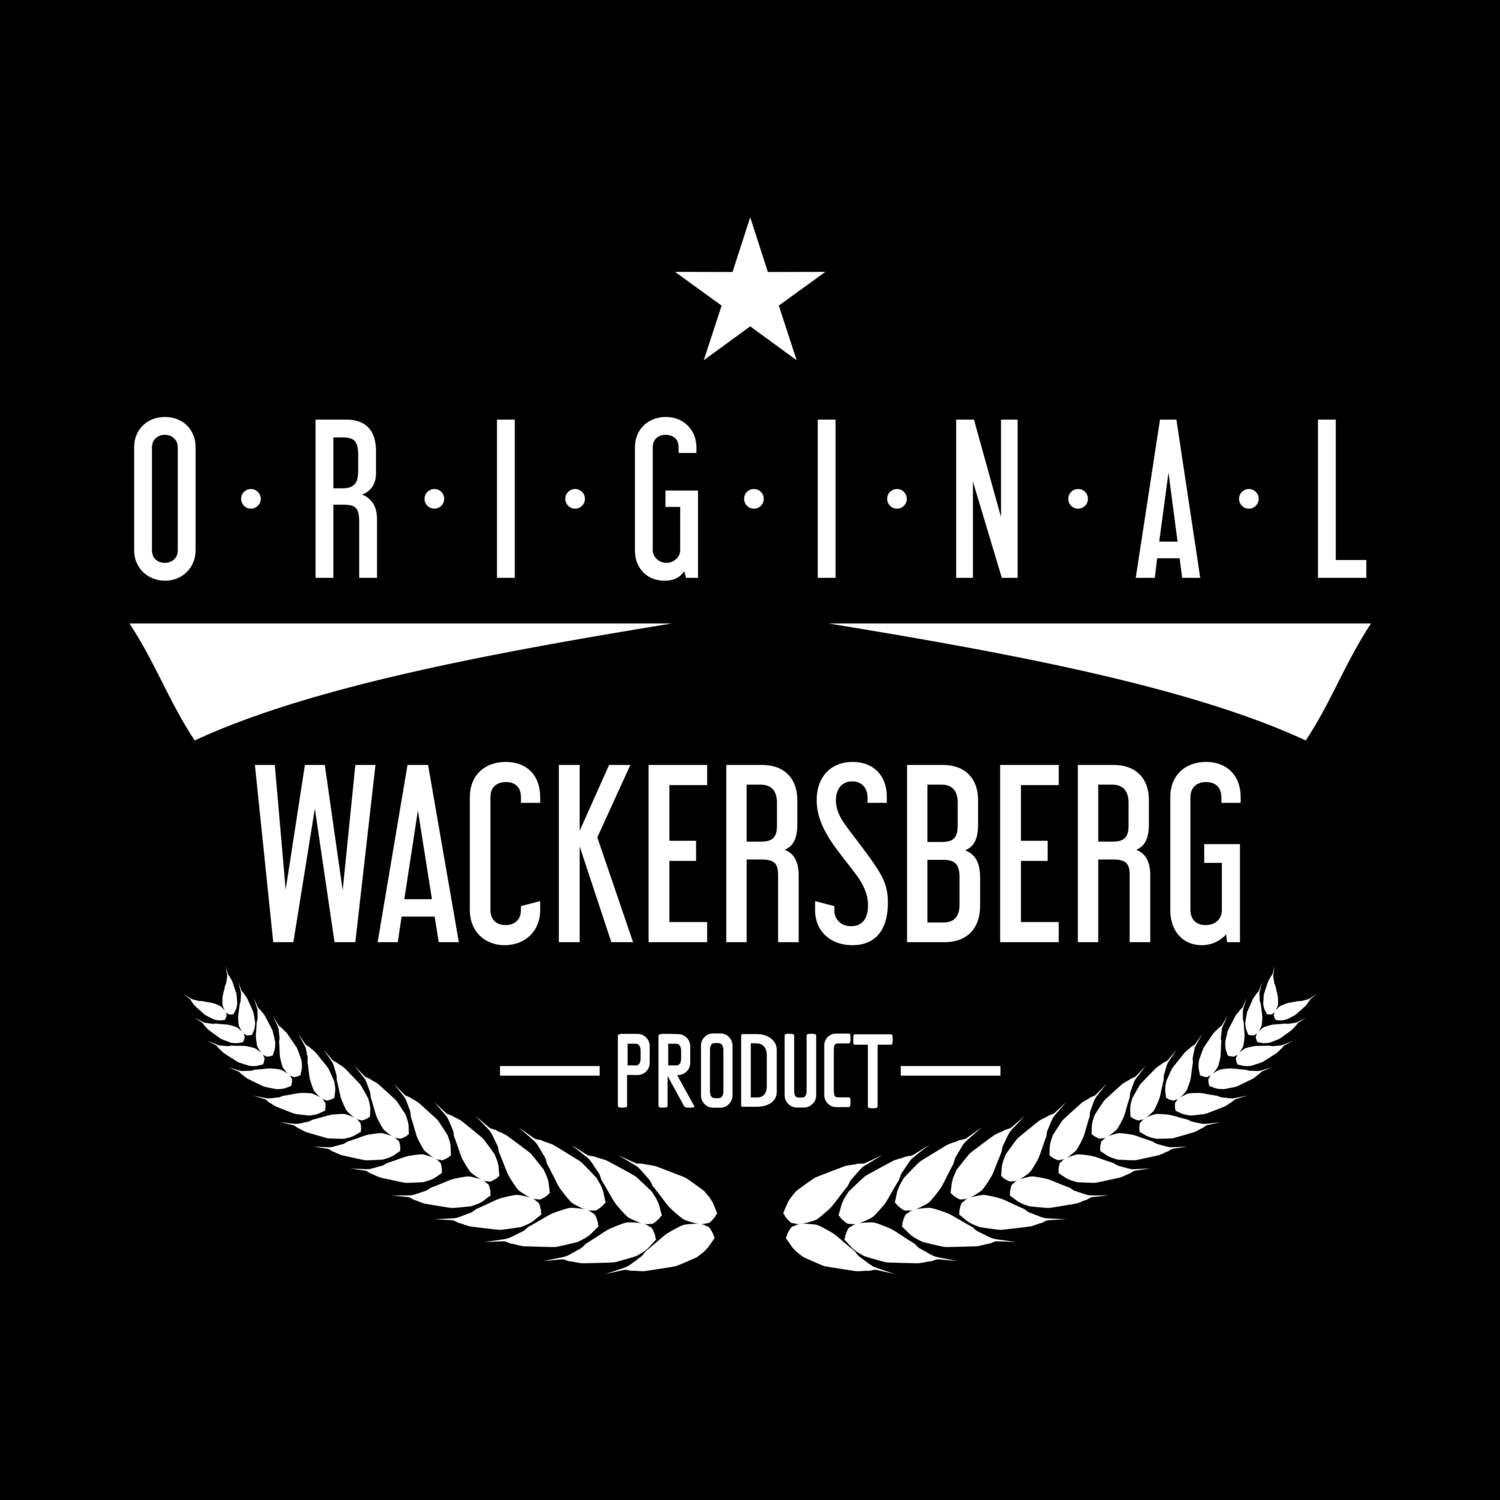 Wackersberg T-Shirt »Original Product«